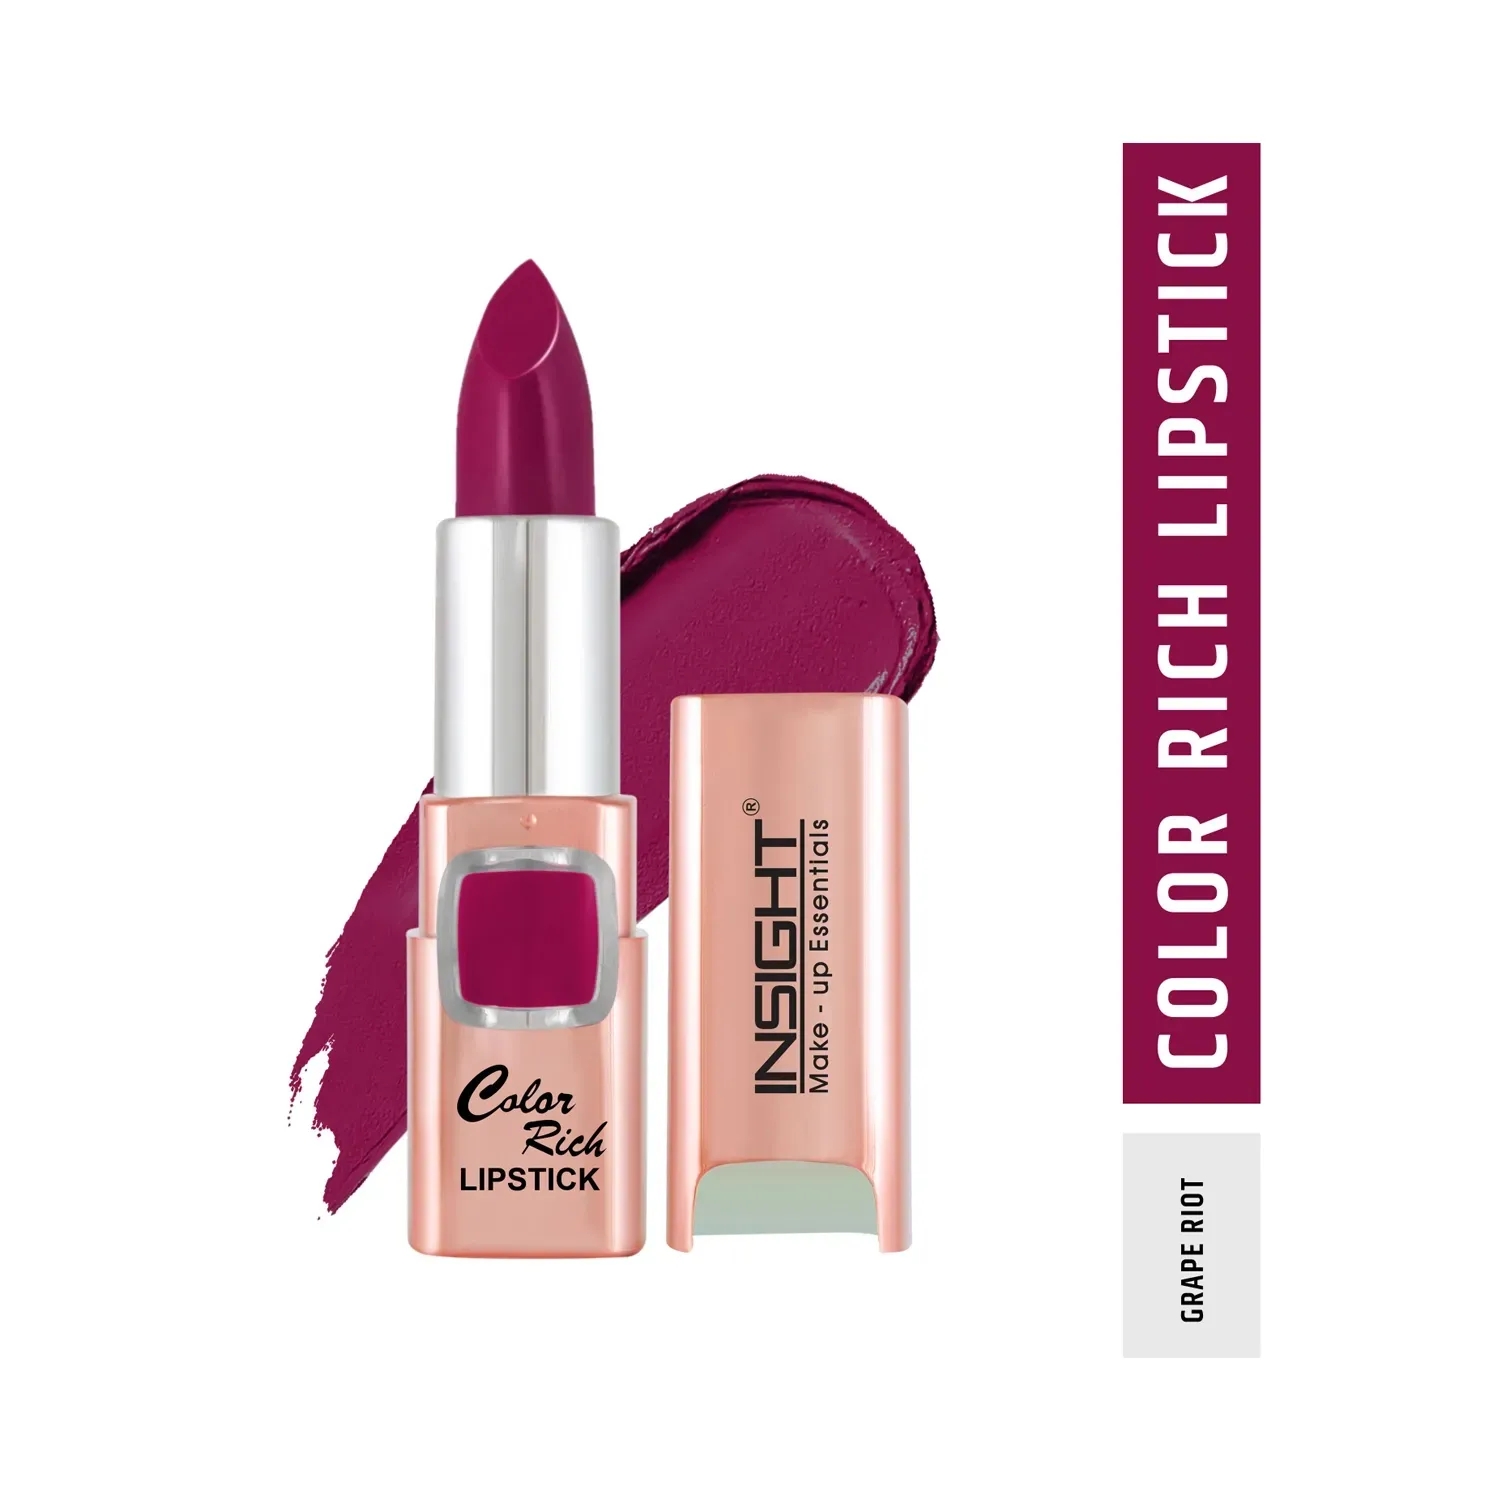 Insight Cosmetics | Insight Cosmetics Color Rich Lipstick - Grape Riot (4.2g)